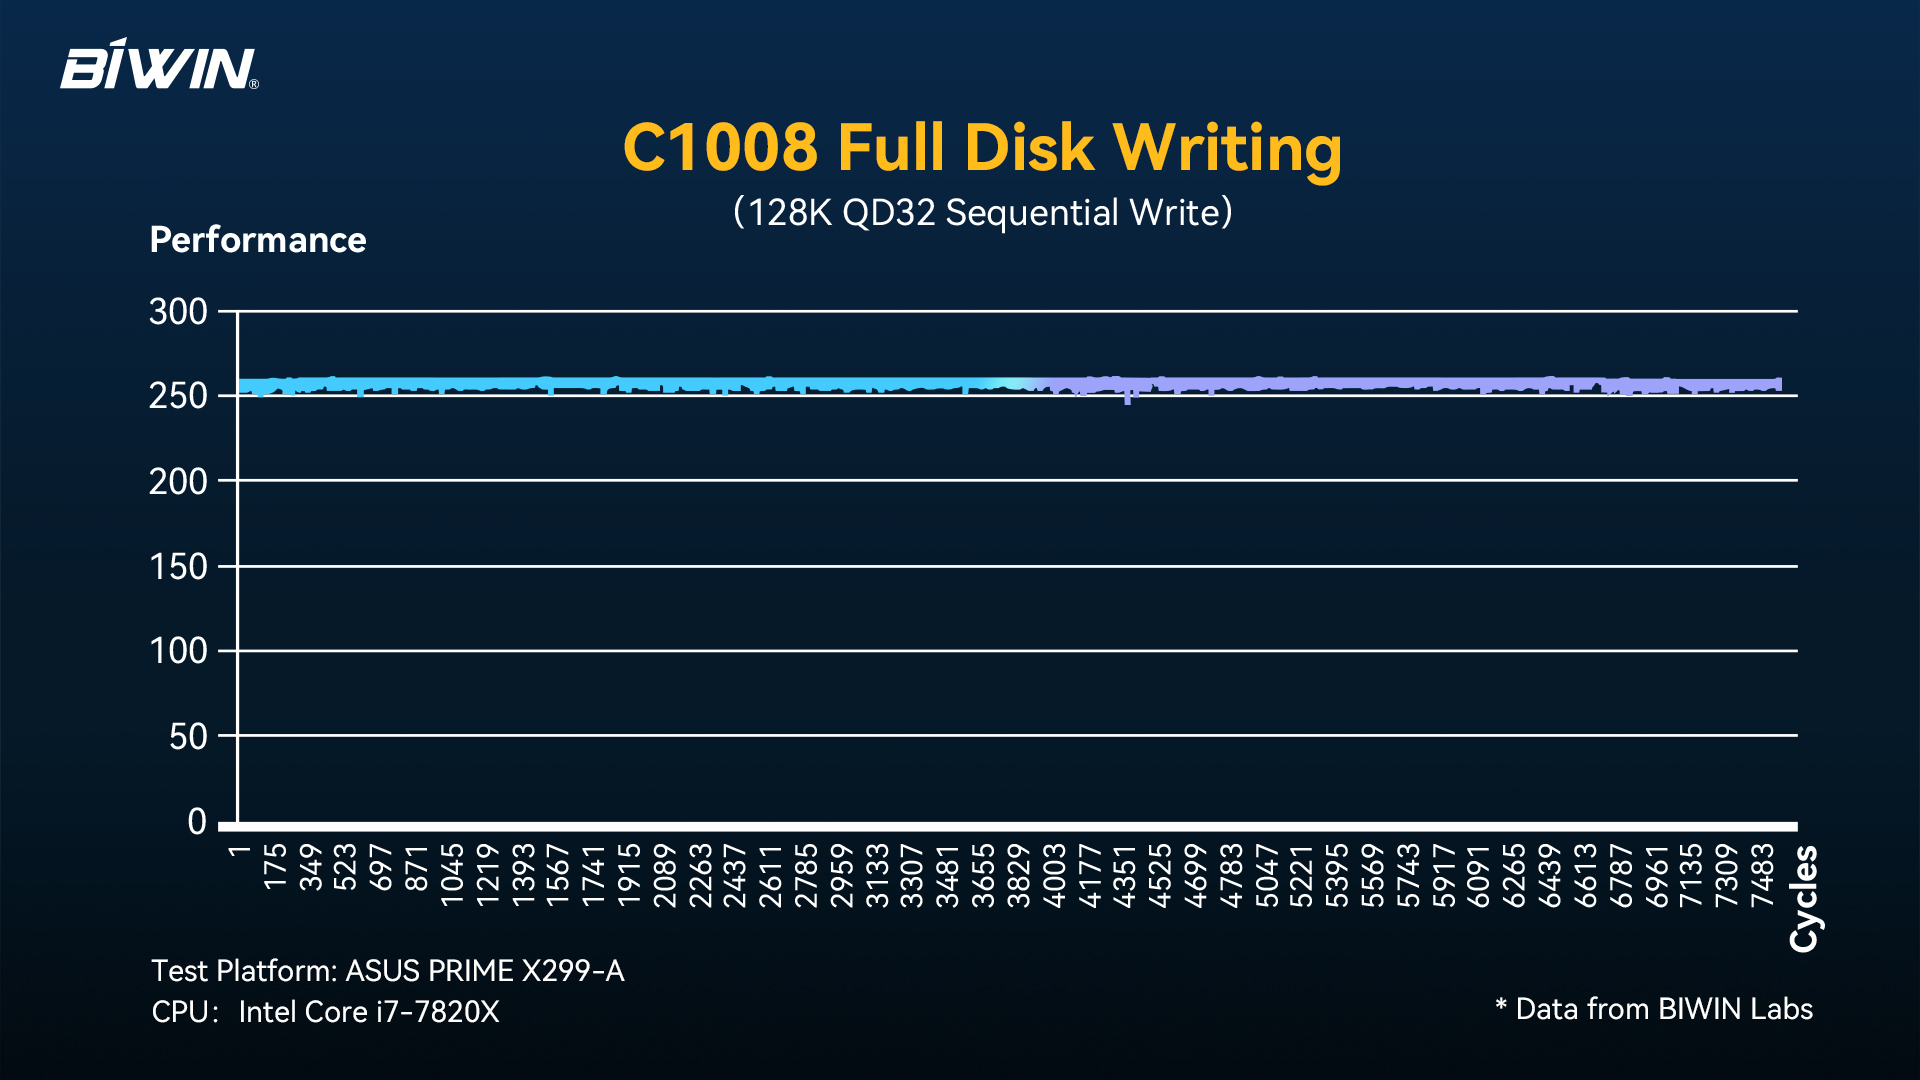 C1008 Full Disk Write